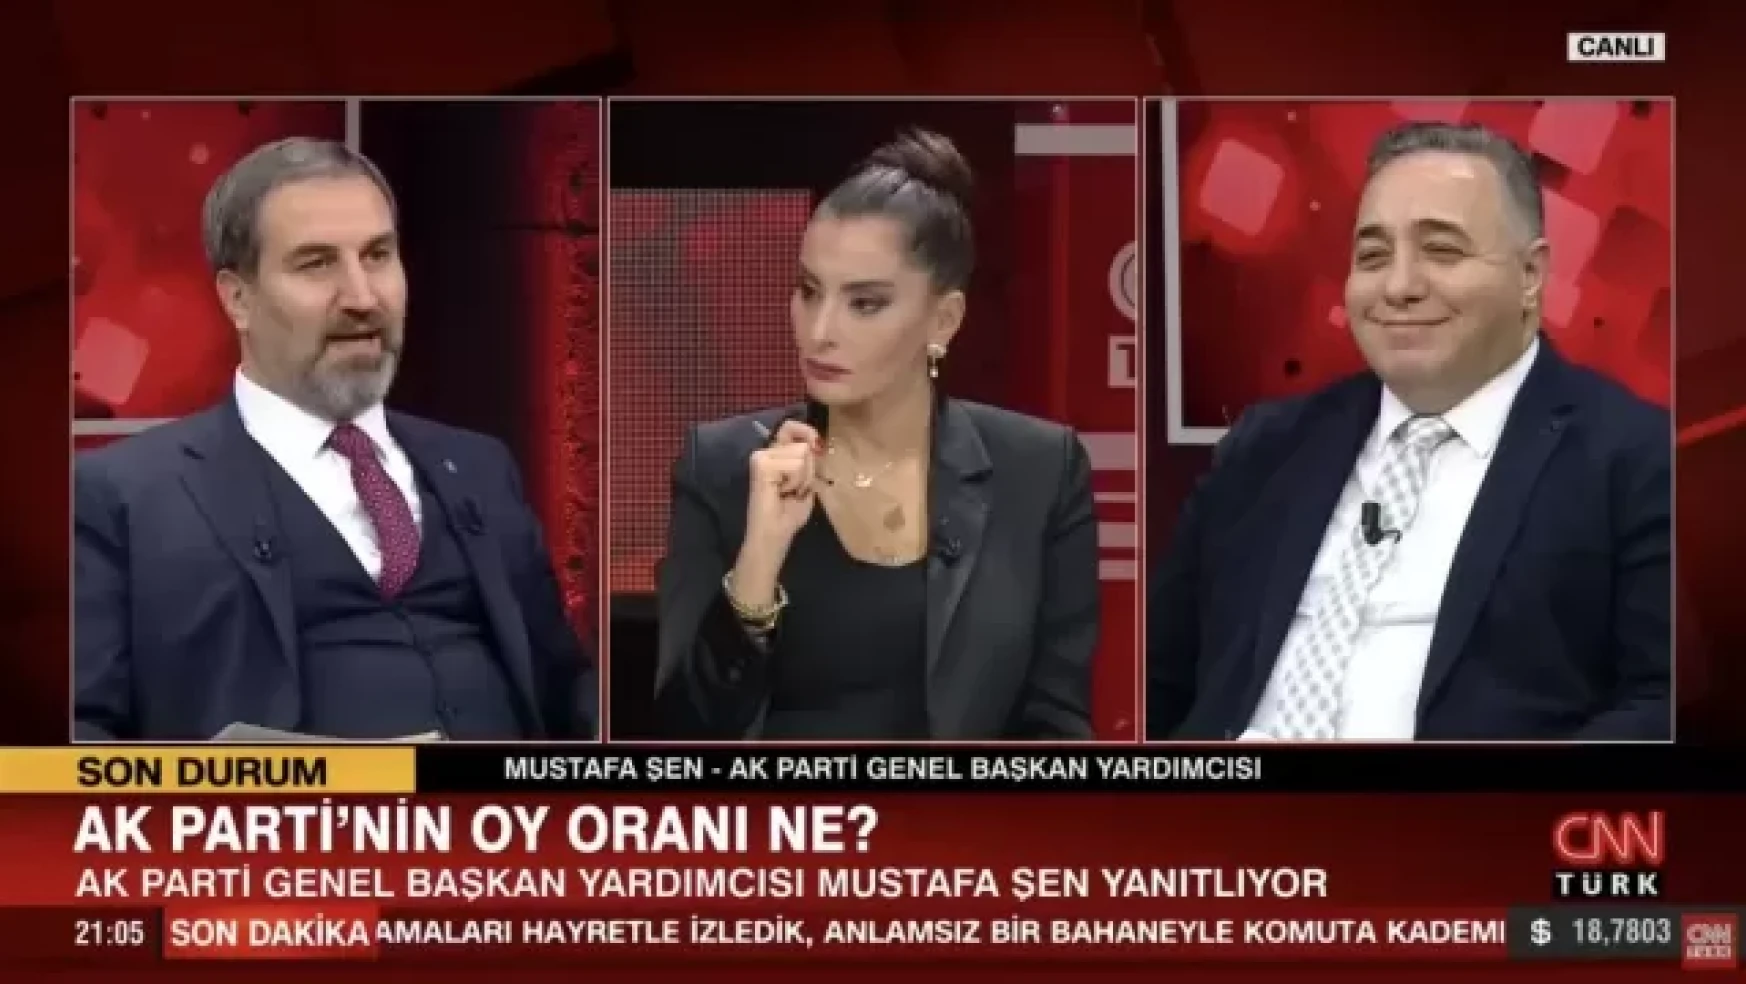 AK Partili Mustafa Şen, partisinin oy oranını açıkladı